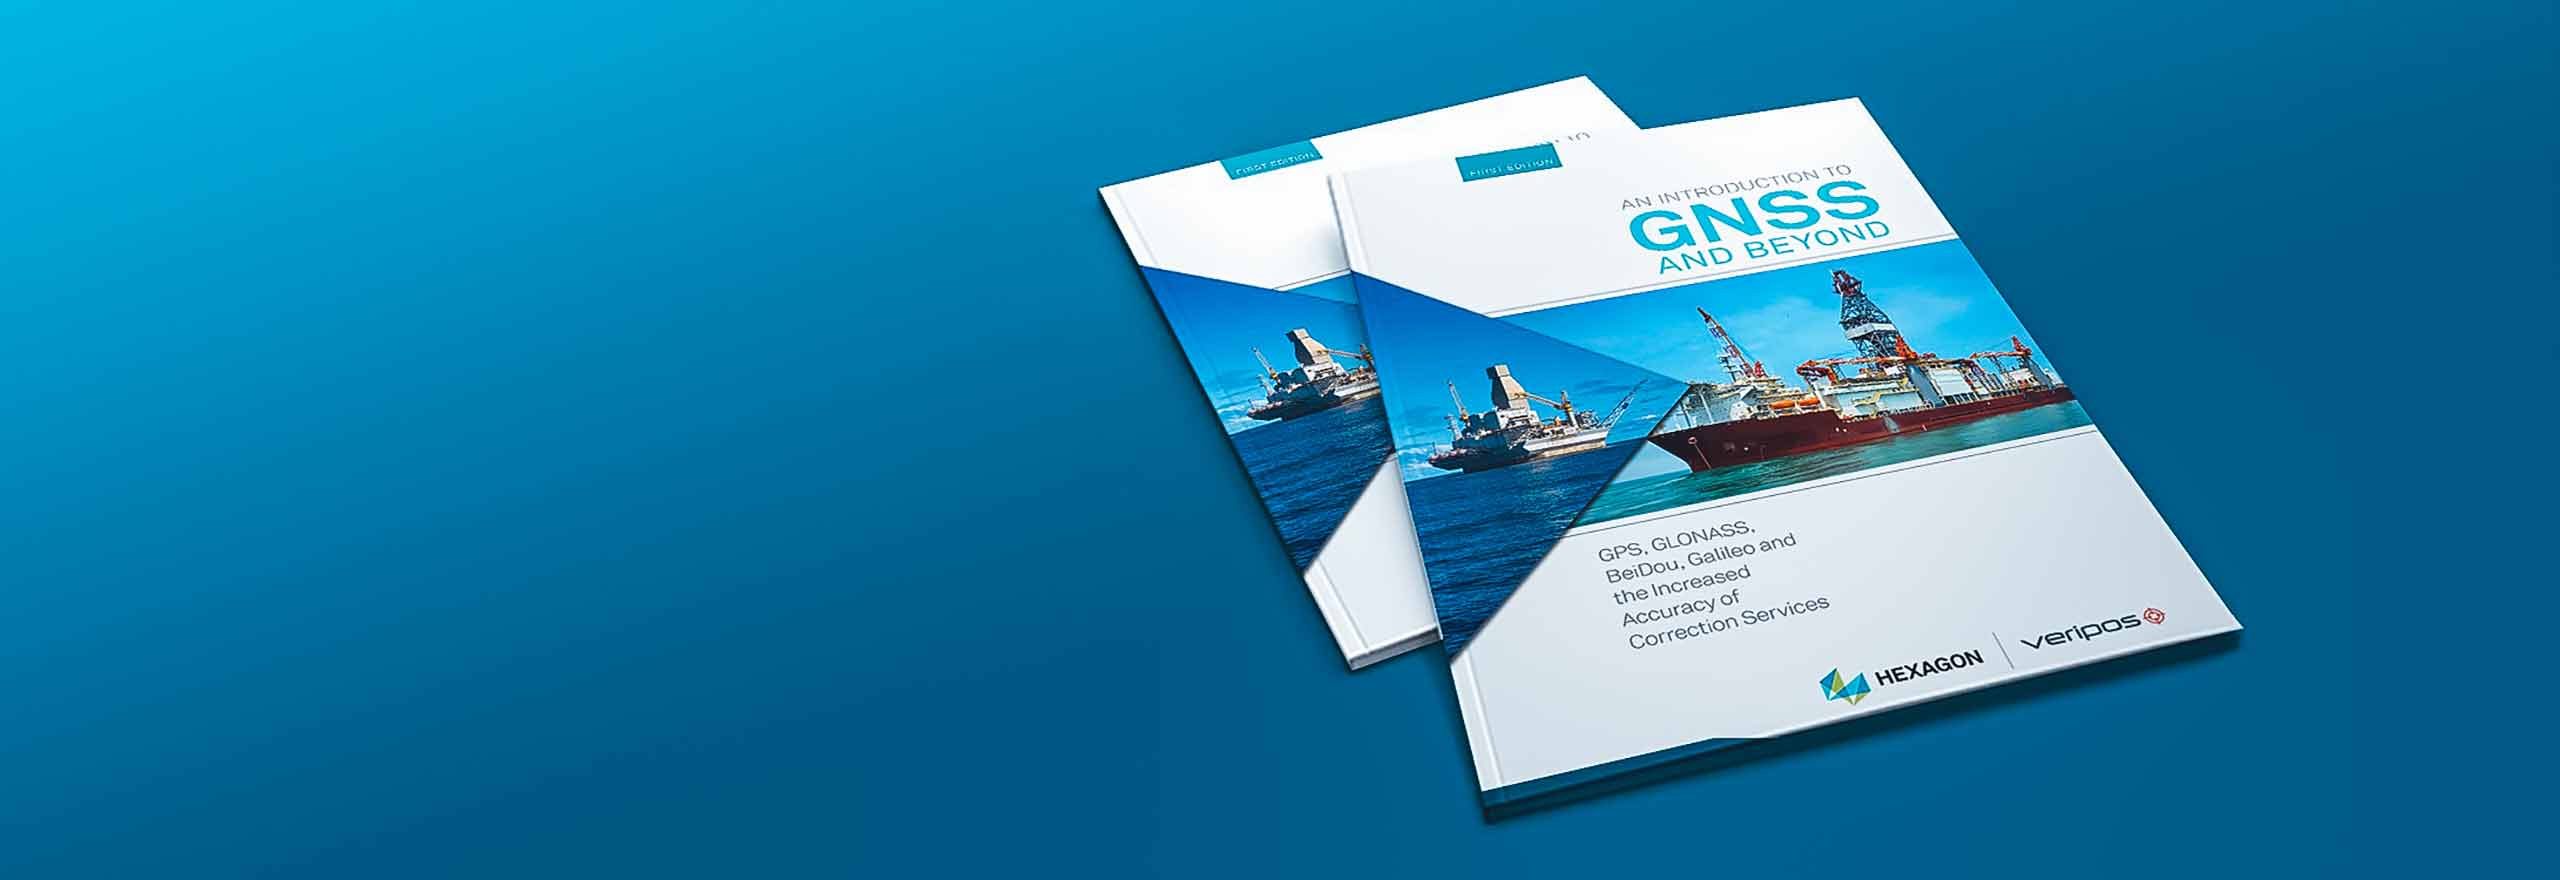 Hexagons Buch „Einführung in GNSS“ auf türkisfarbenem Hintergrund.